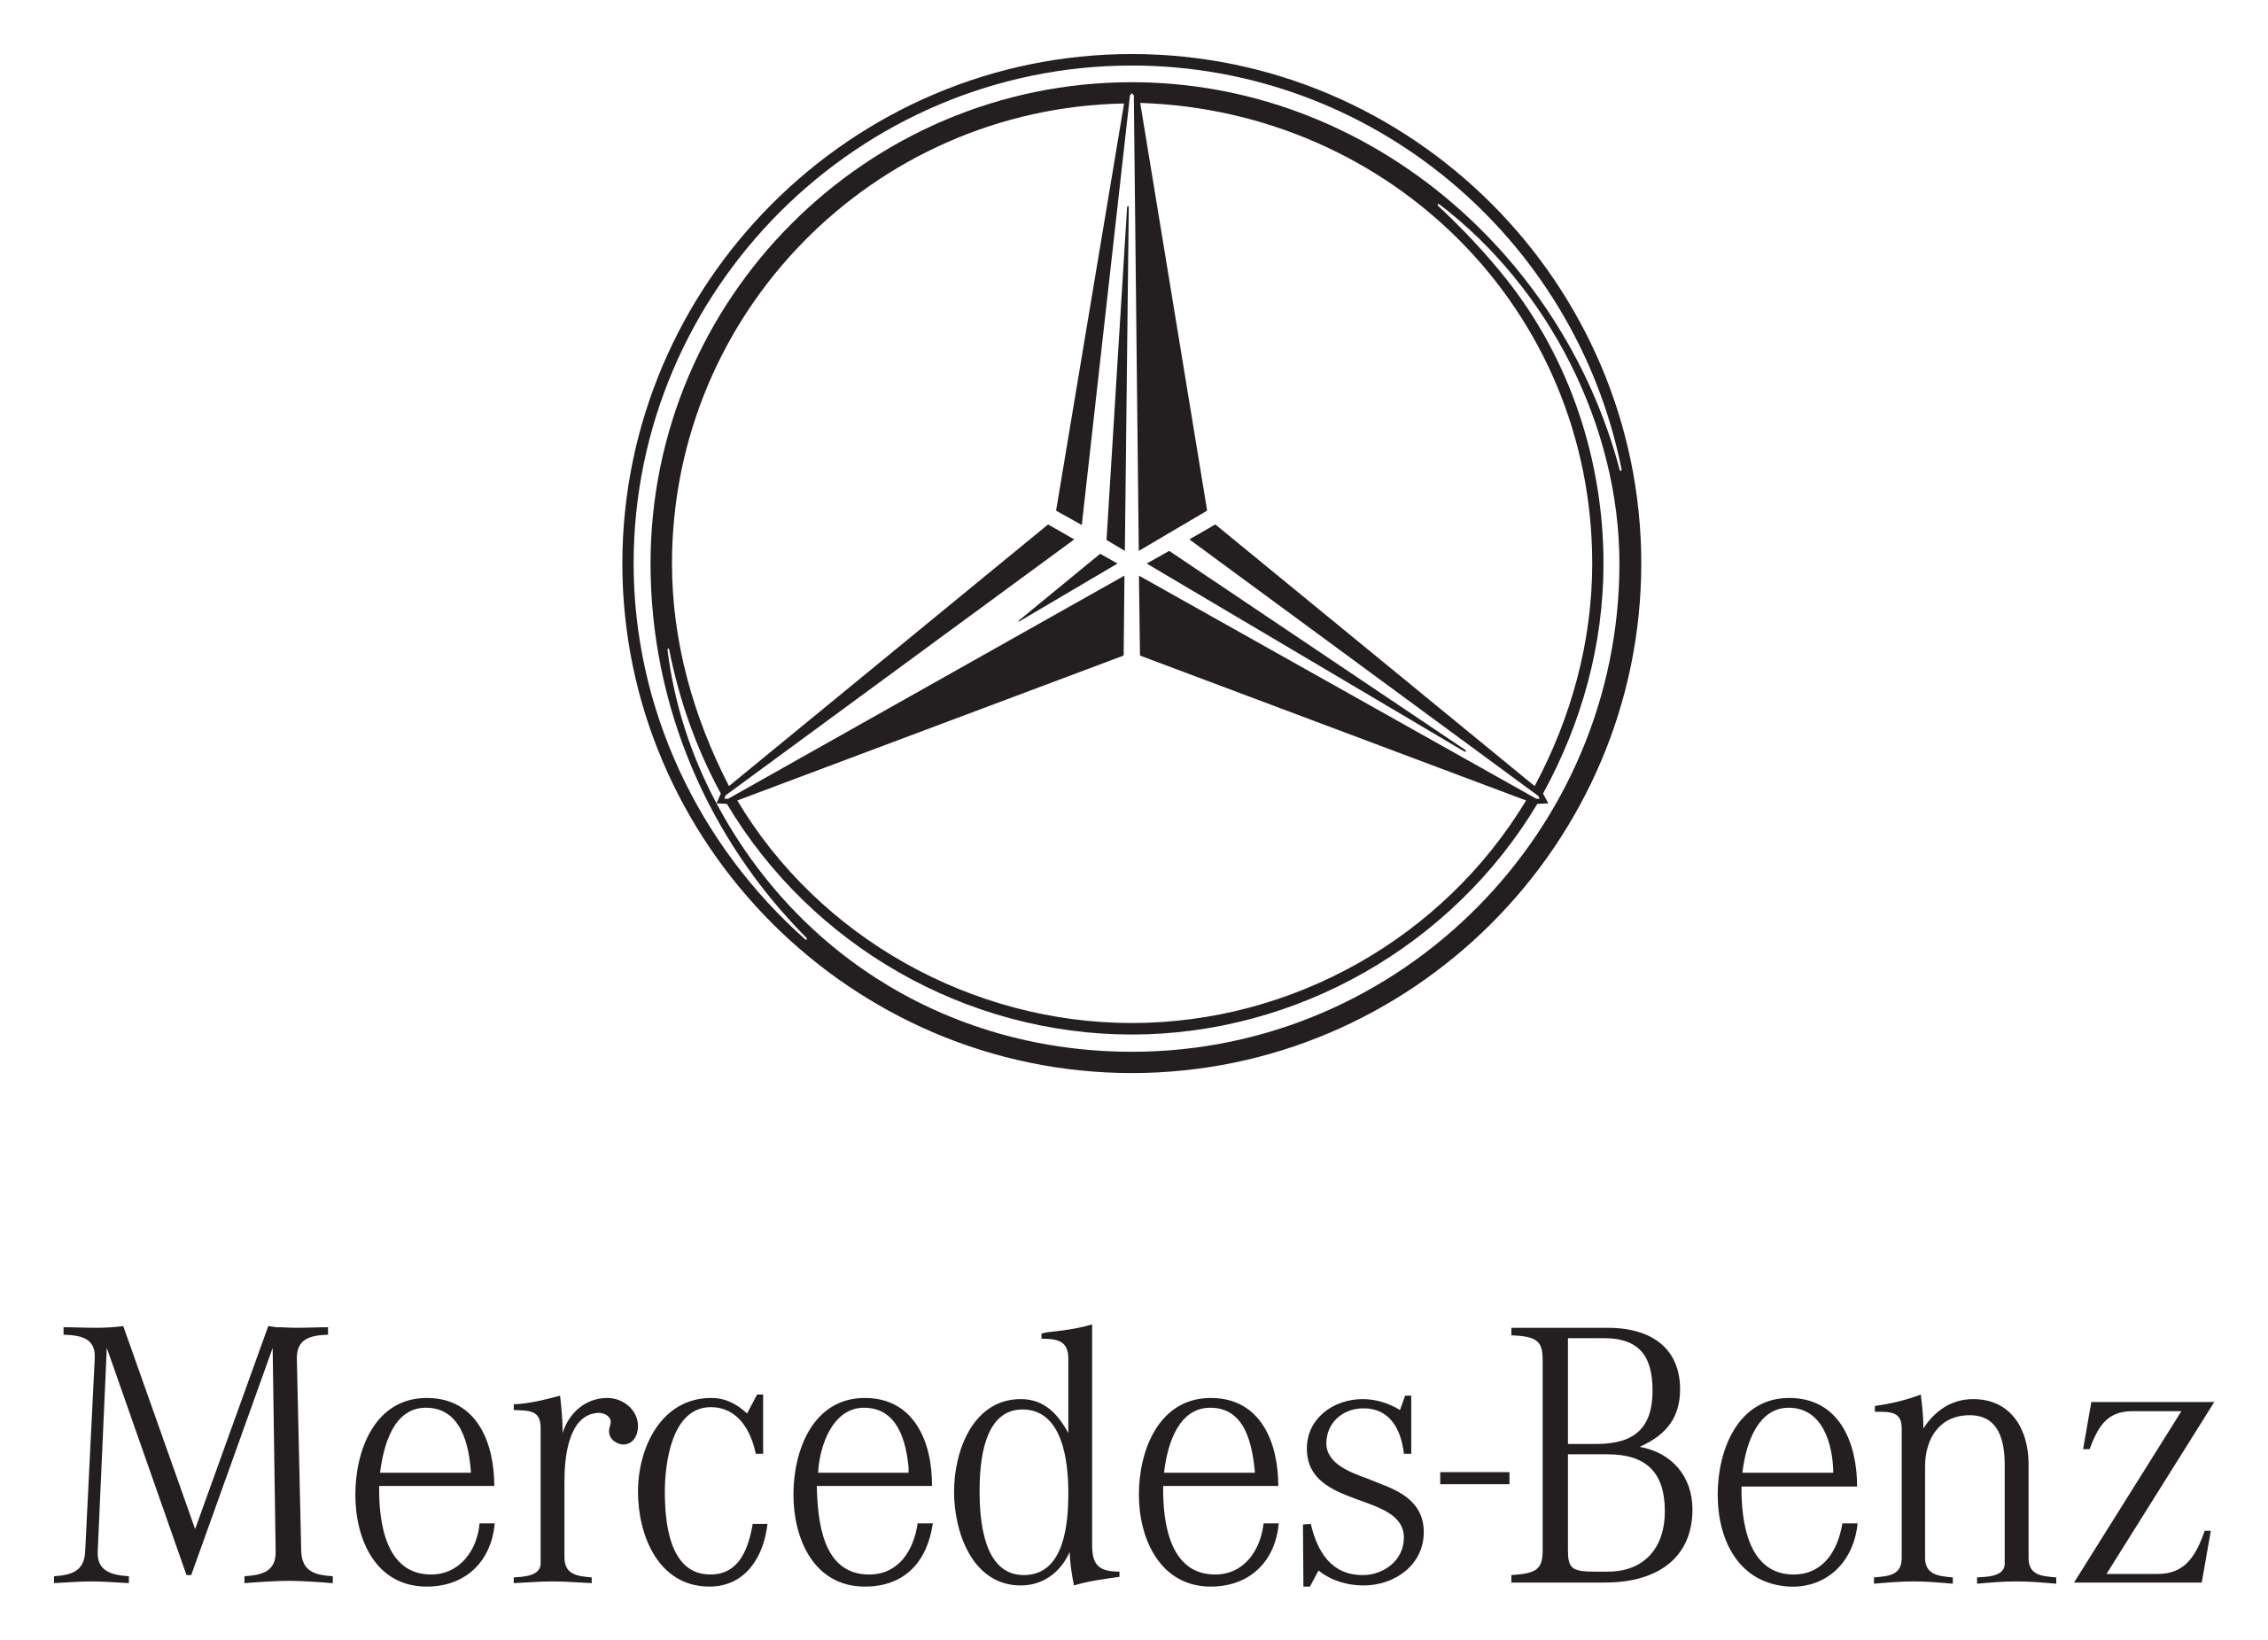 evernine-referenz-mercedes-logo